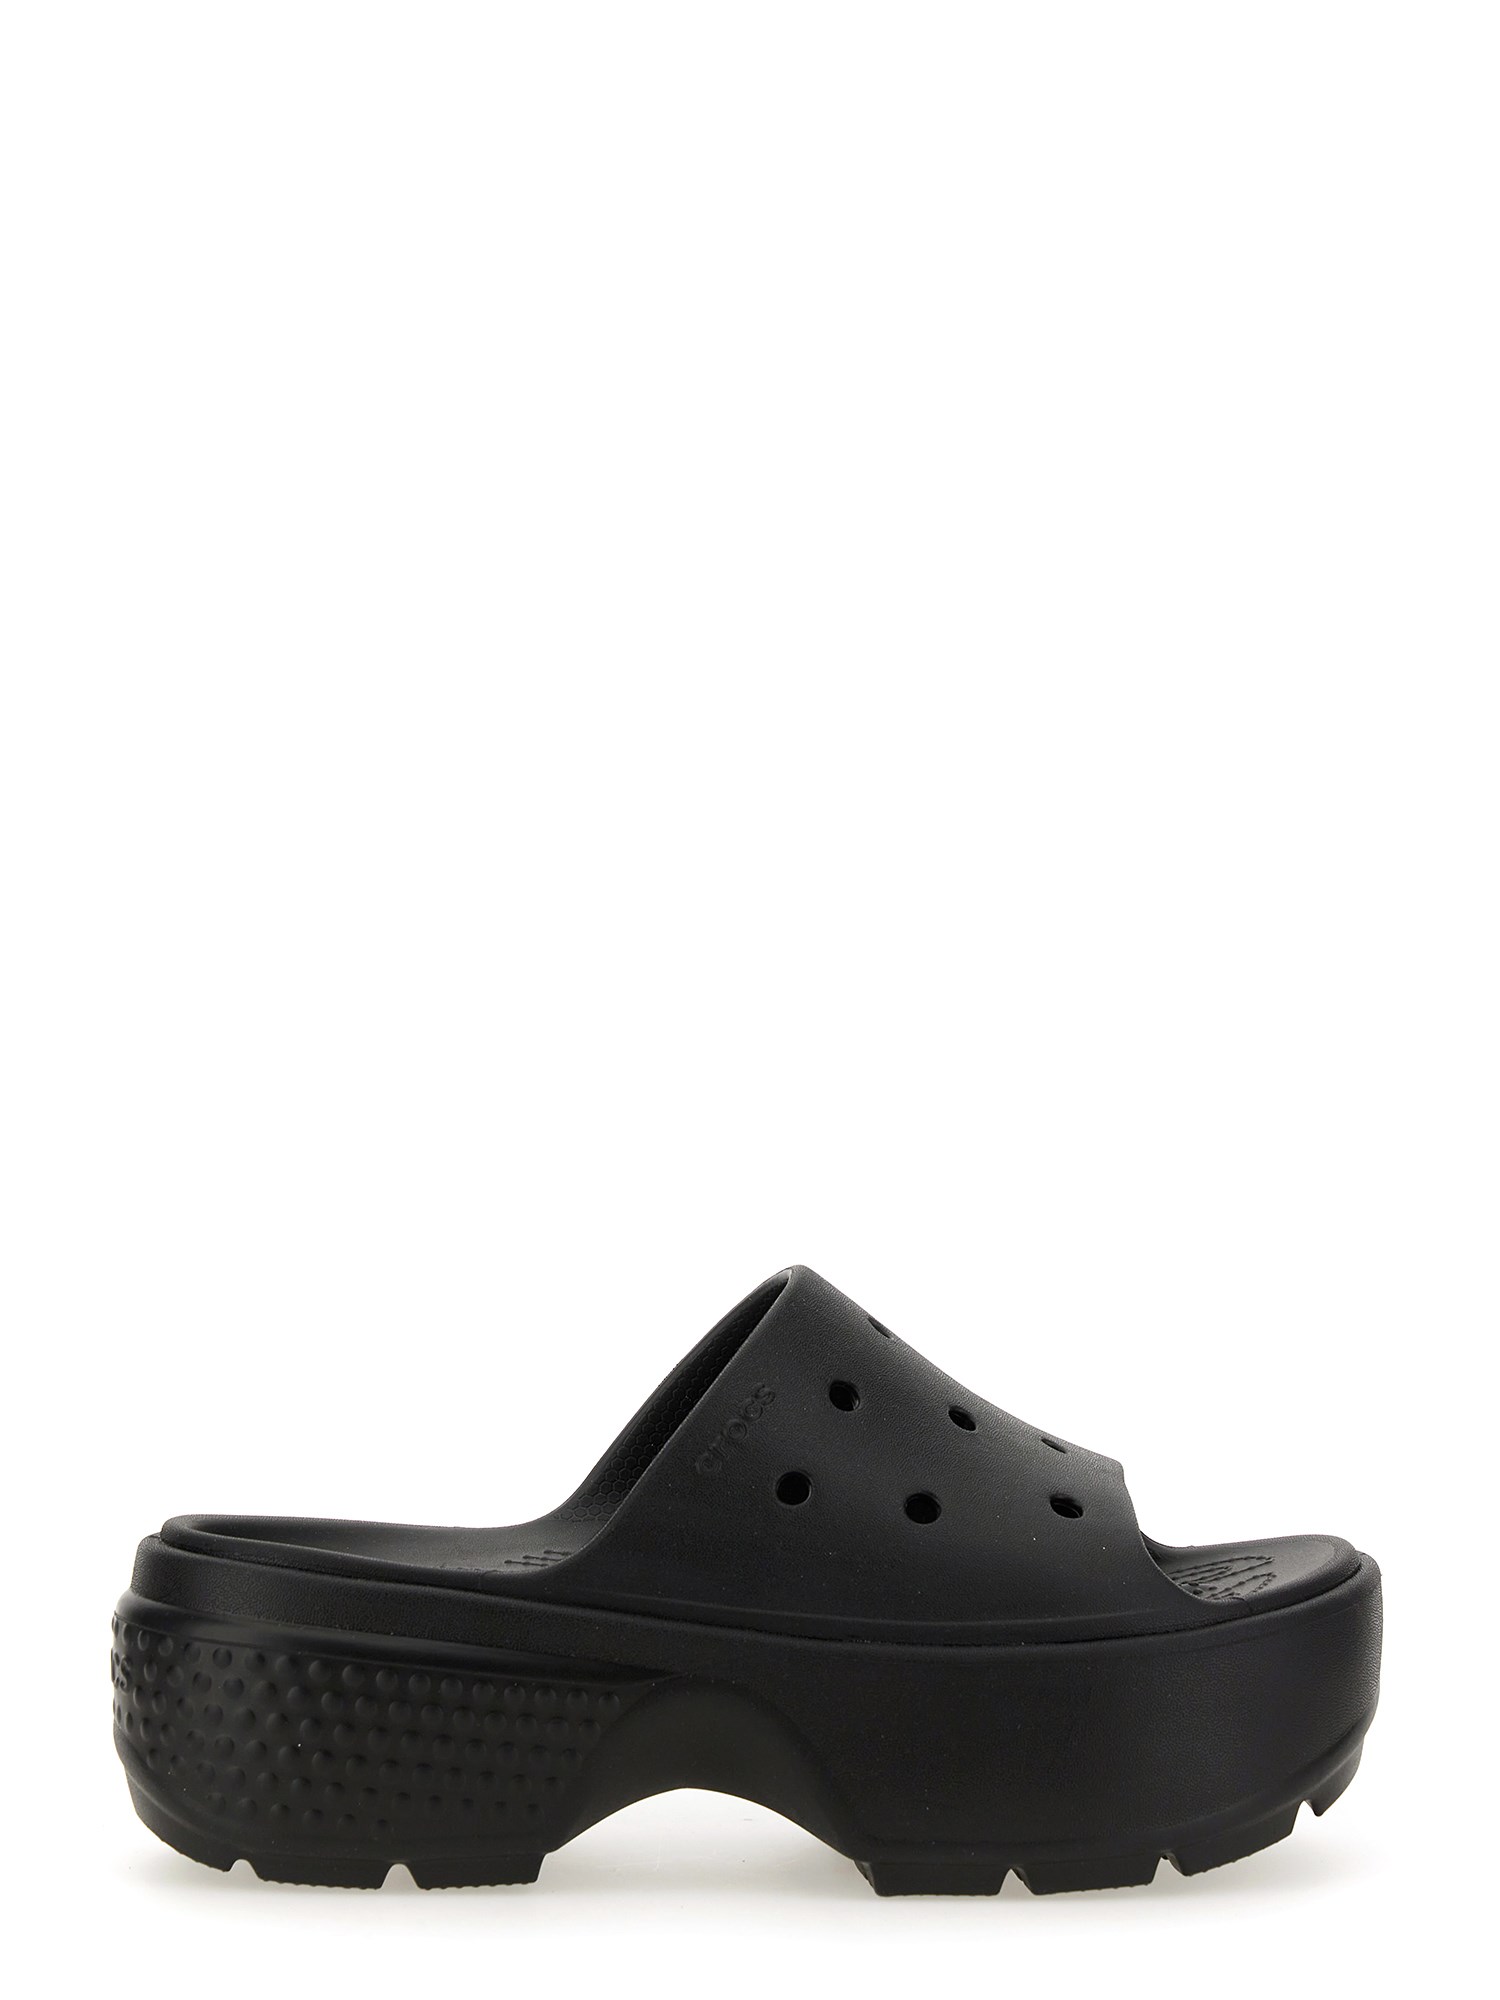 Shop Crocs Slide Sandal "stomp" In Black